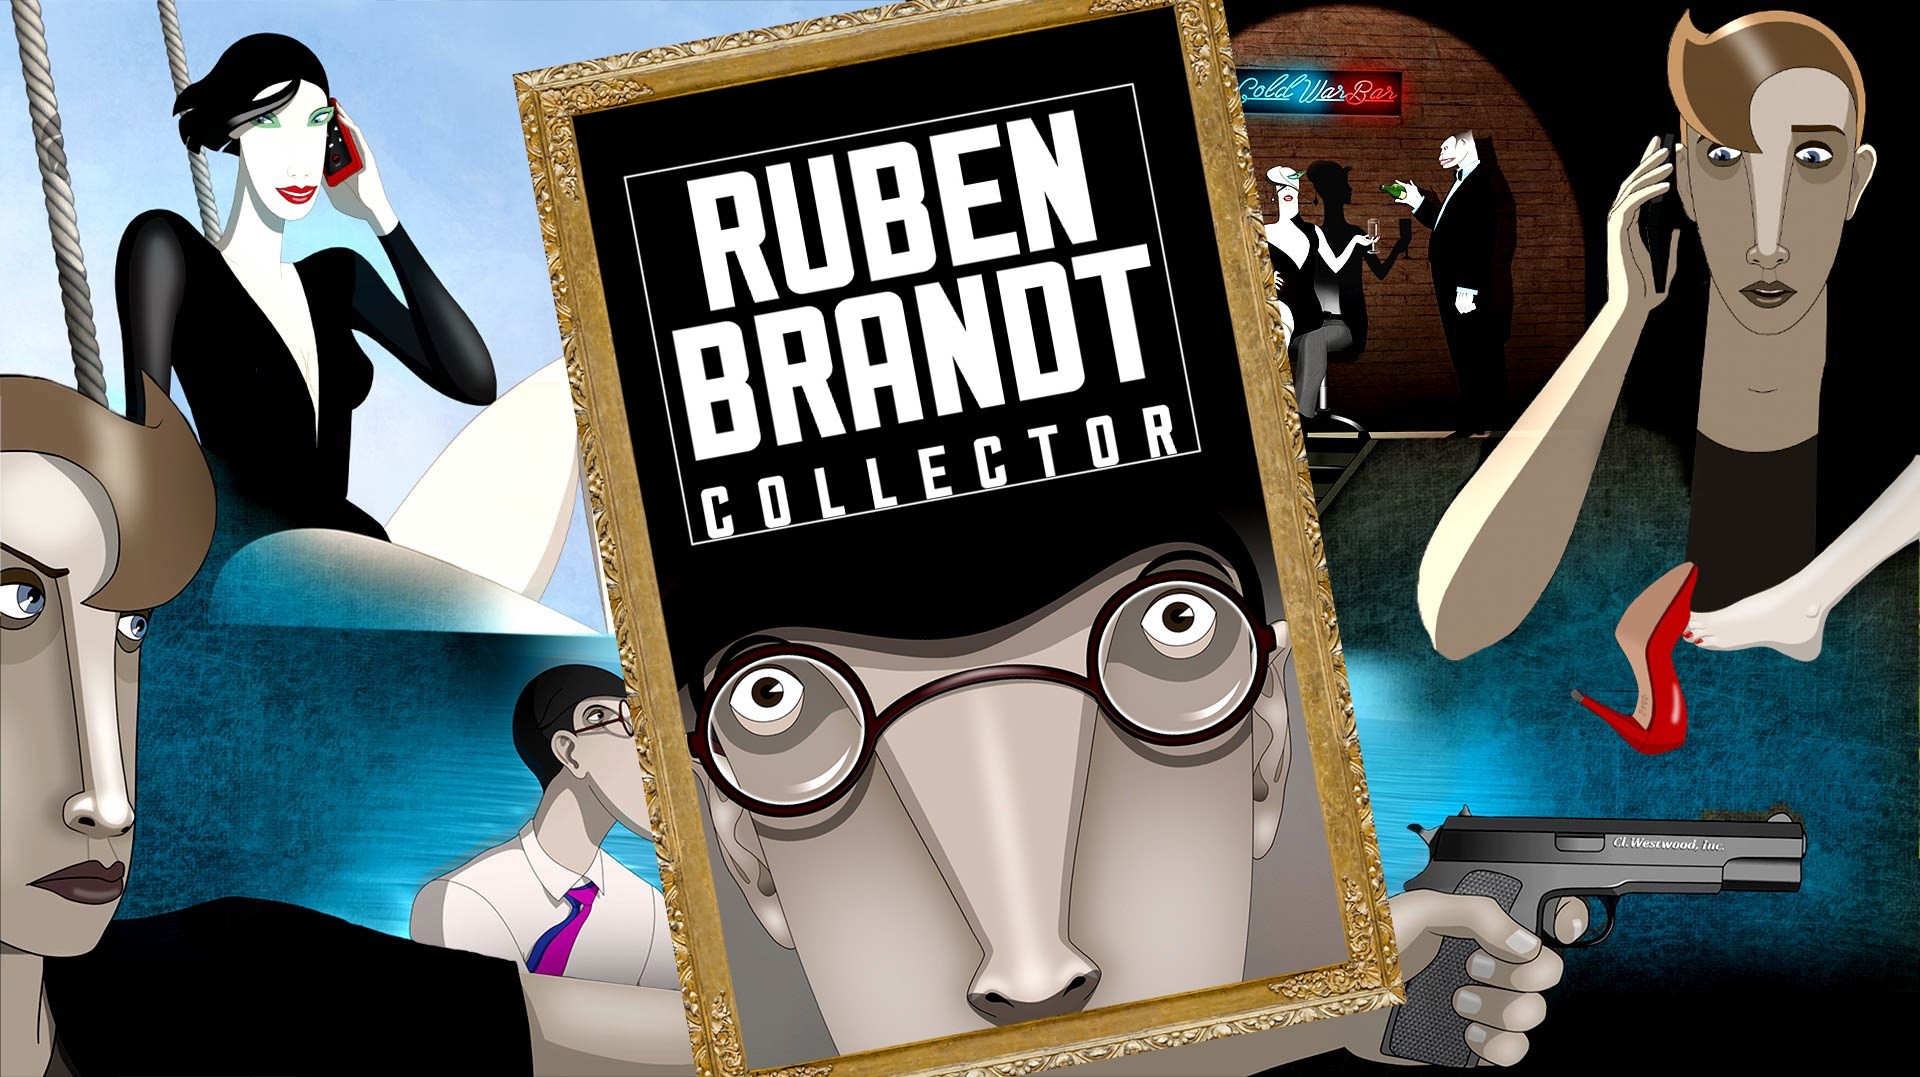 Filmi i “Ruben Brandt Collector” shfaqet në Anibar